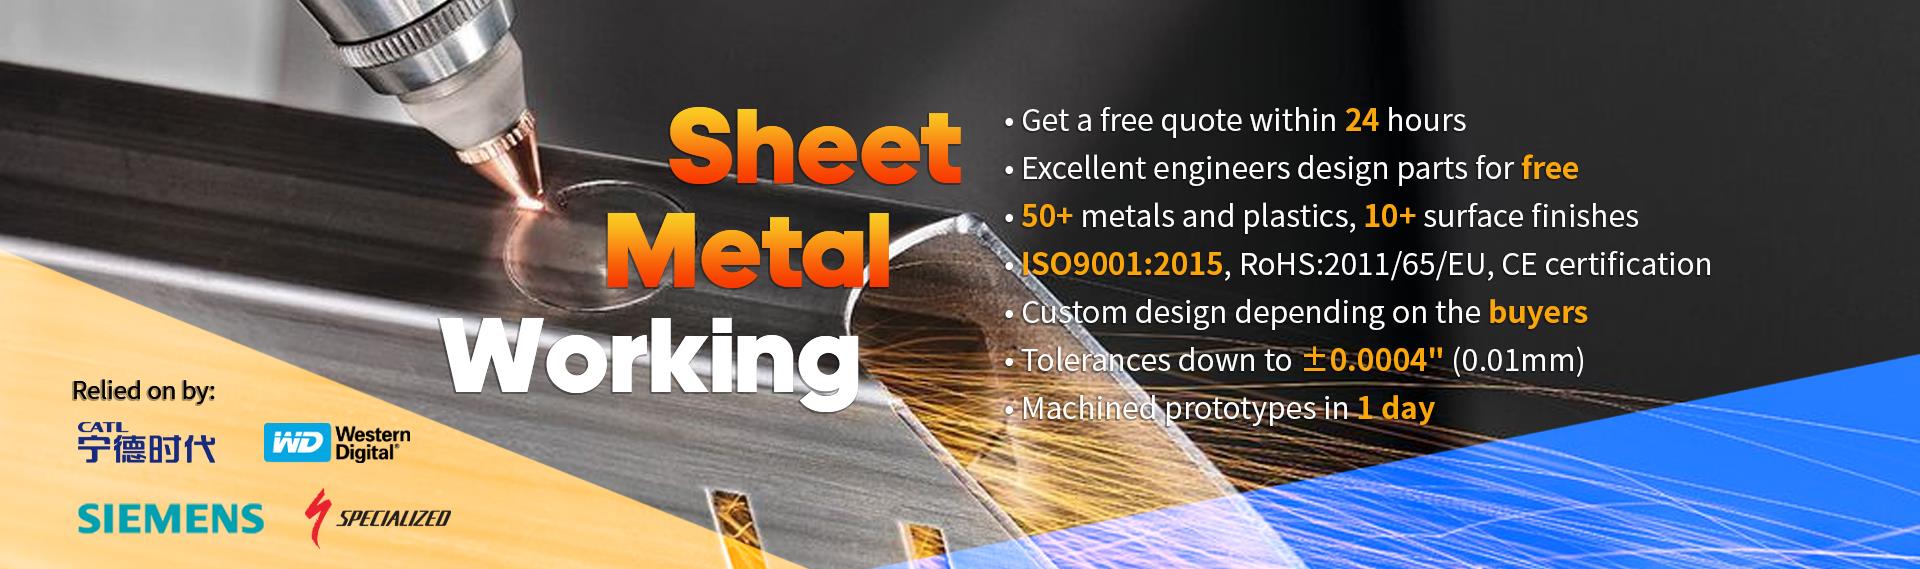 sheet-metal-working-Inc